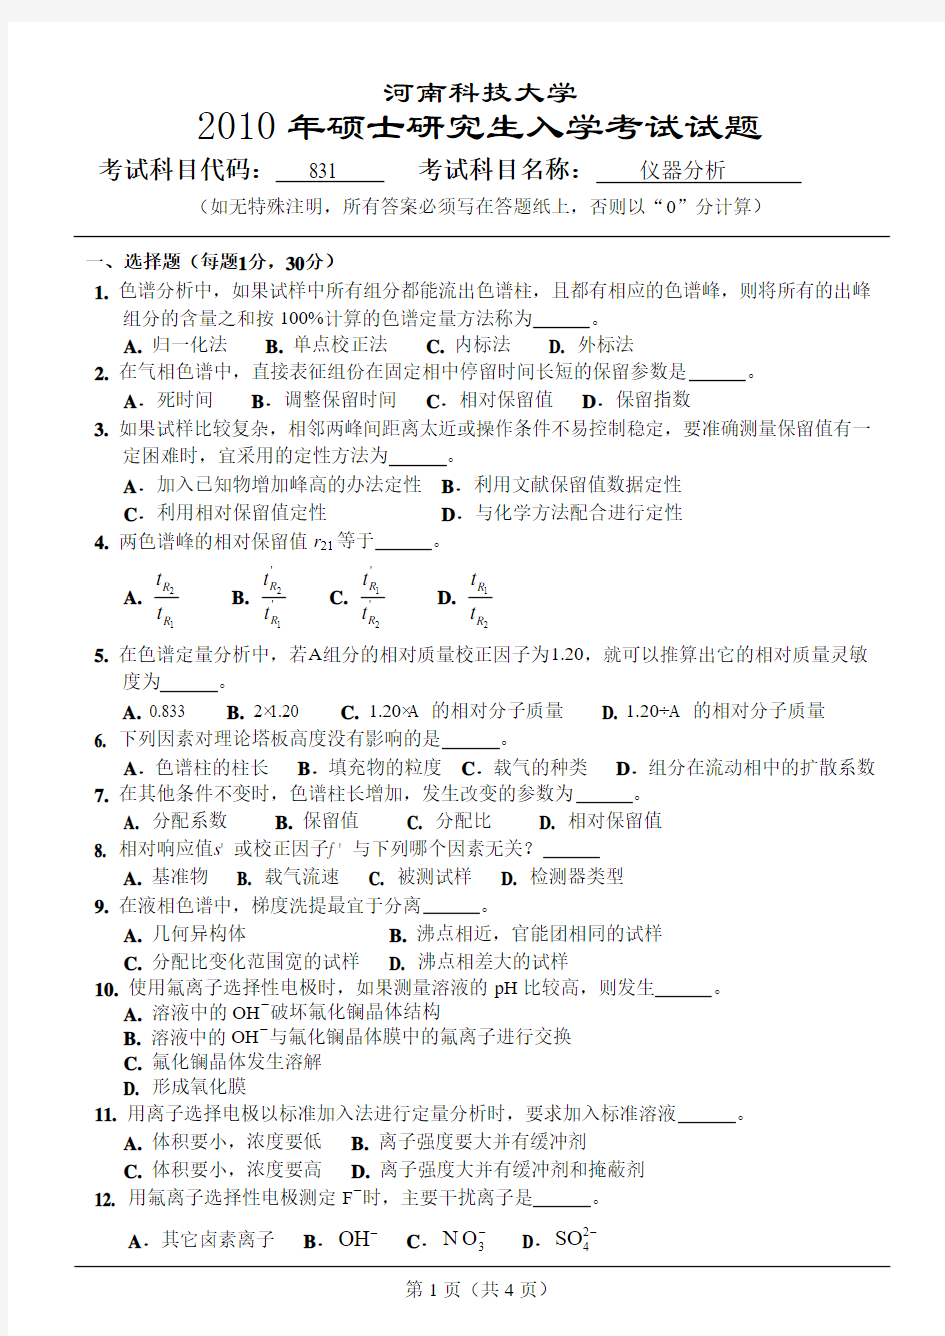 河南科技大学研究生考试仪器分析试题及答案05